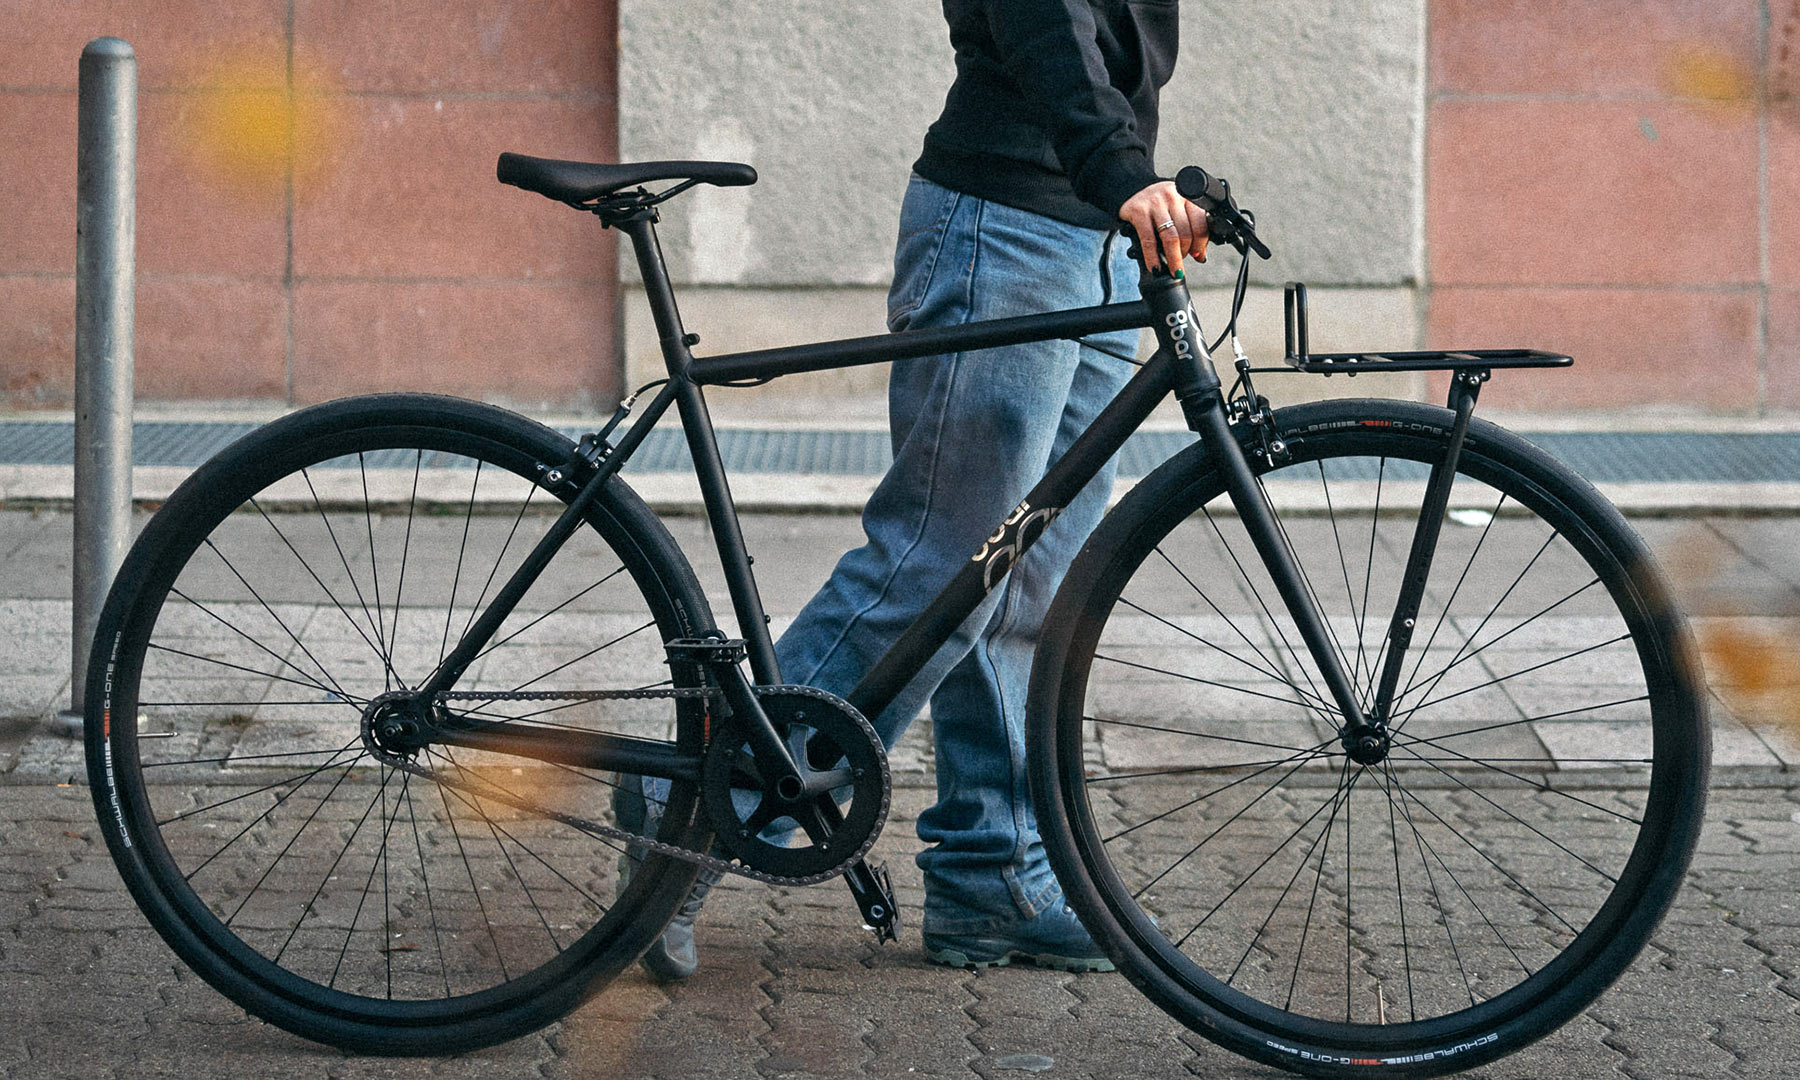 8bar Neukln steel v2 bici fixie singlespeed versatile ed economica, foto di Stefan Haehnel, pendolare urbano con portapacchi